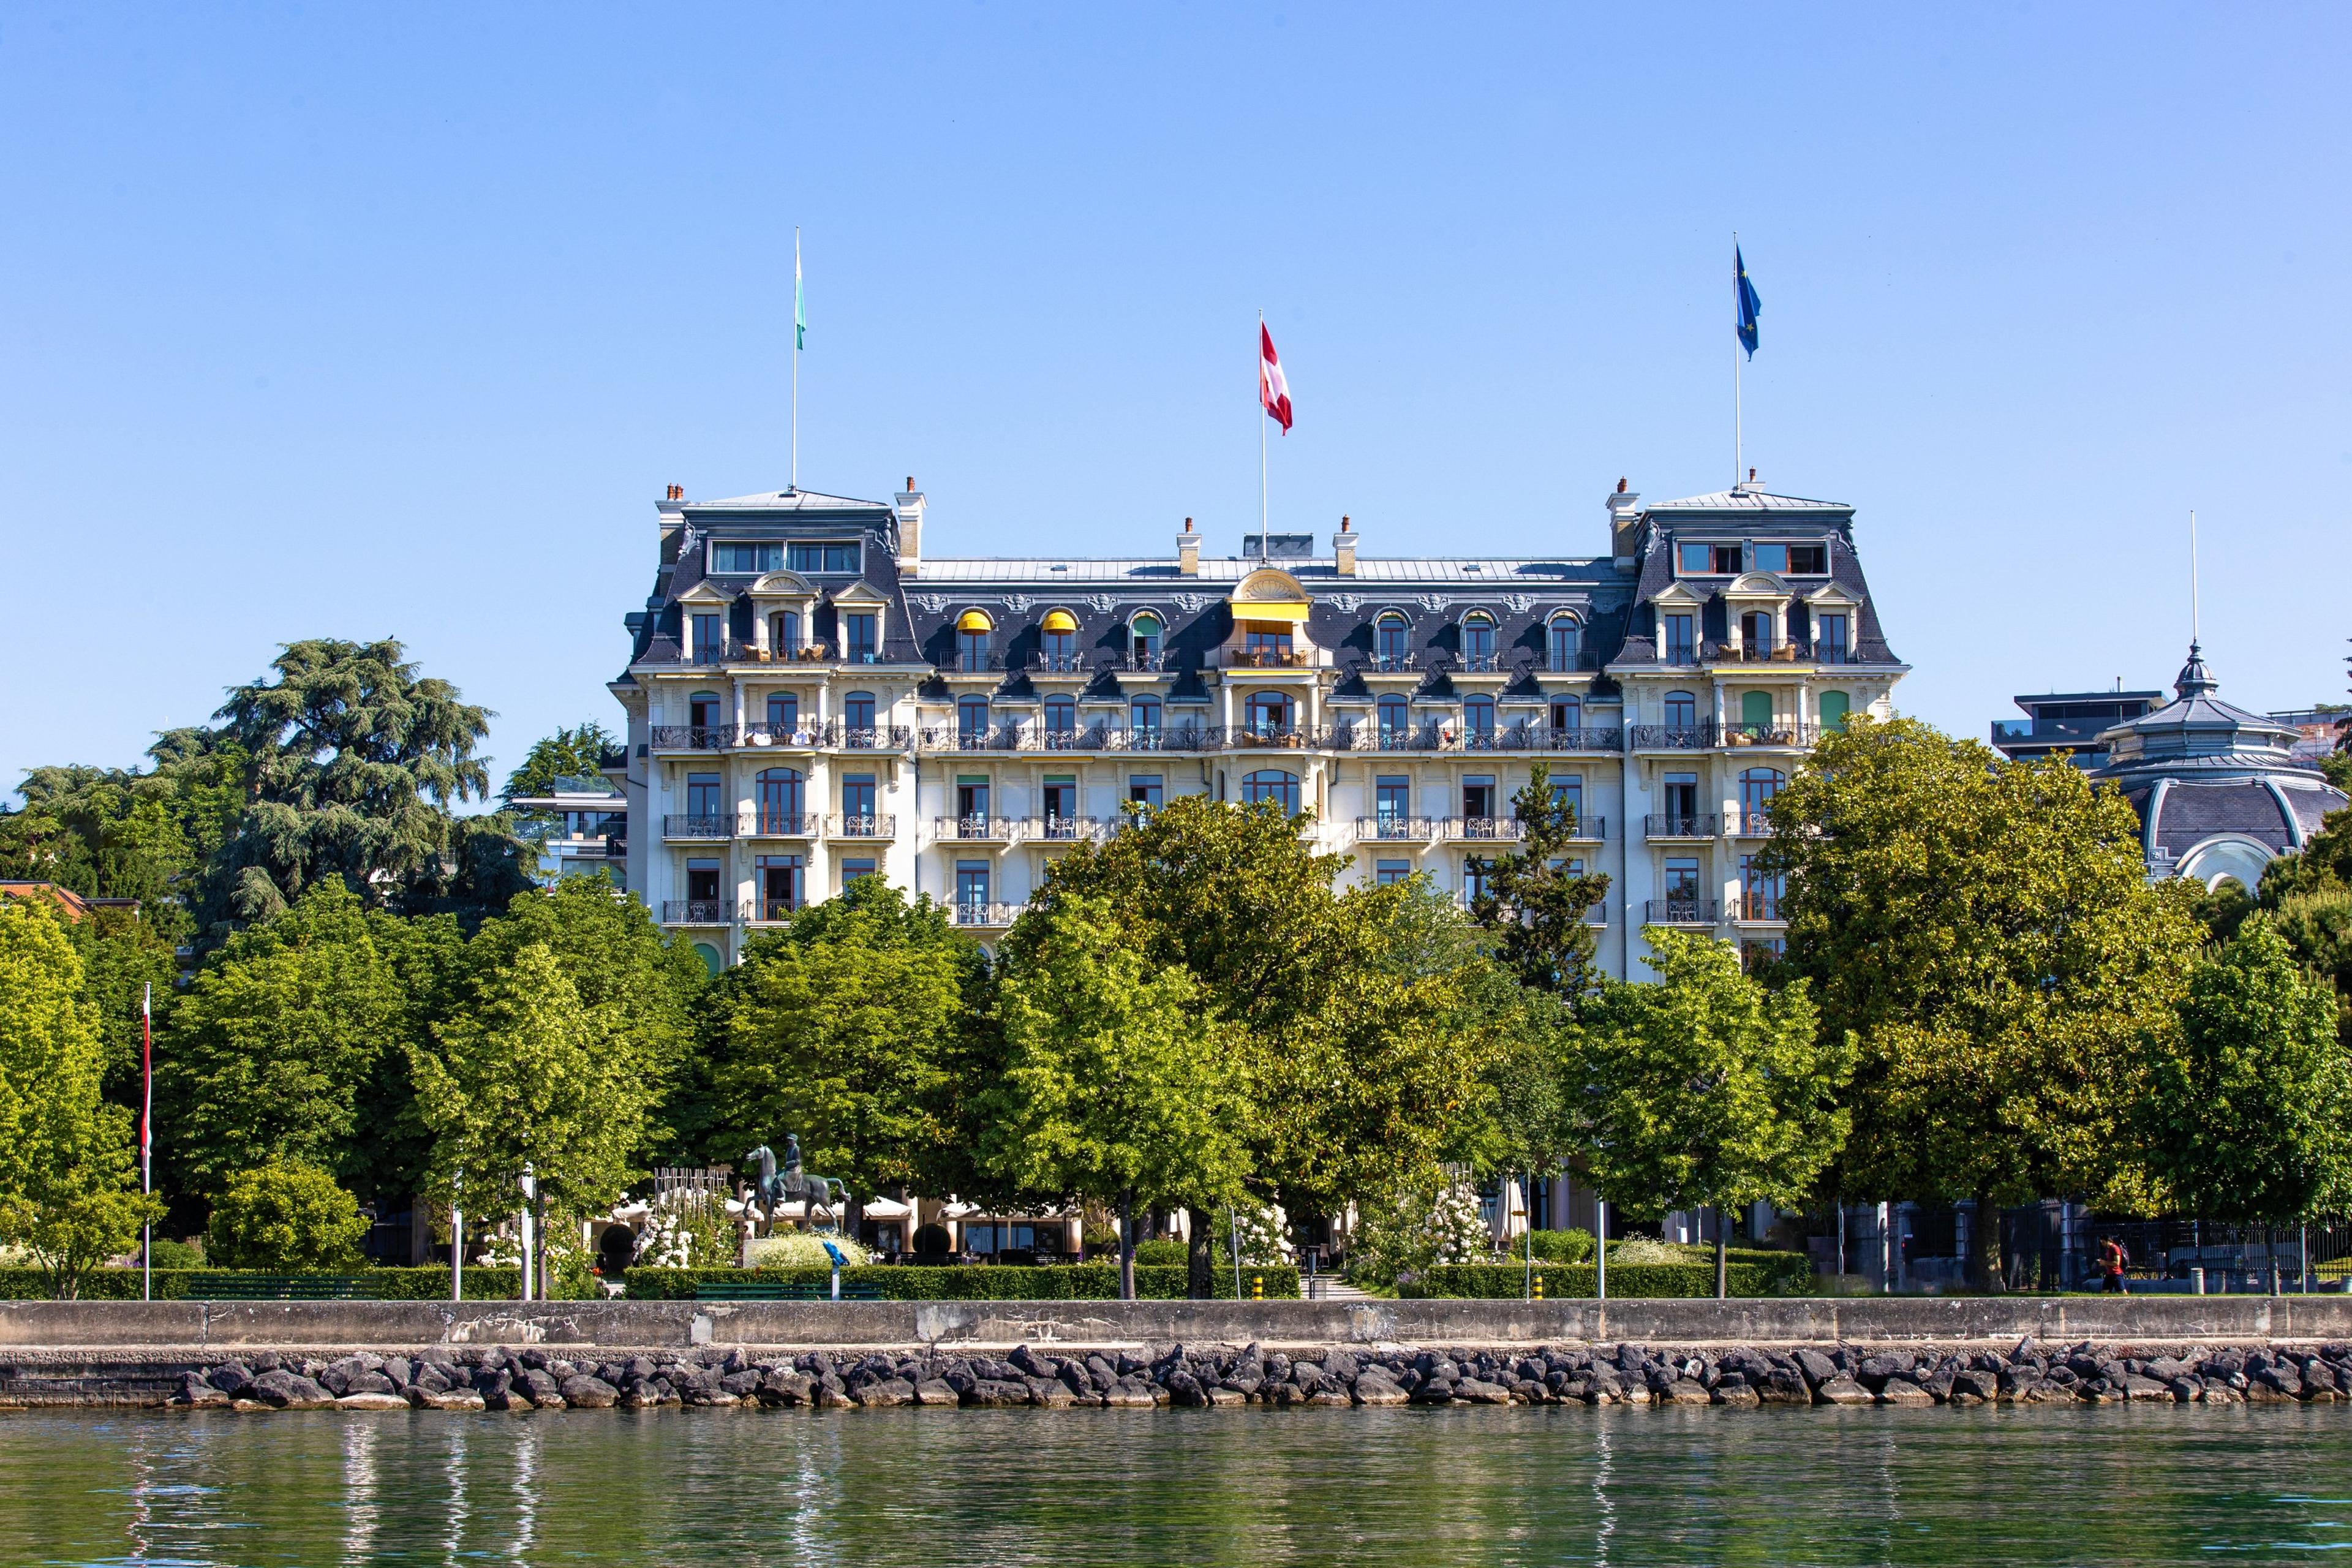 Beau-Rivage Palace - Lausanne, Switzerland